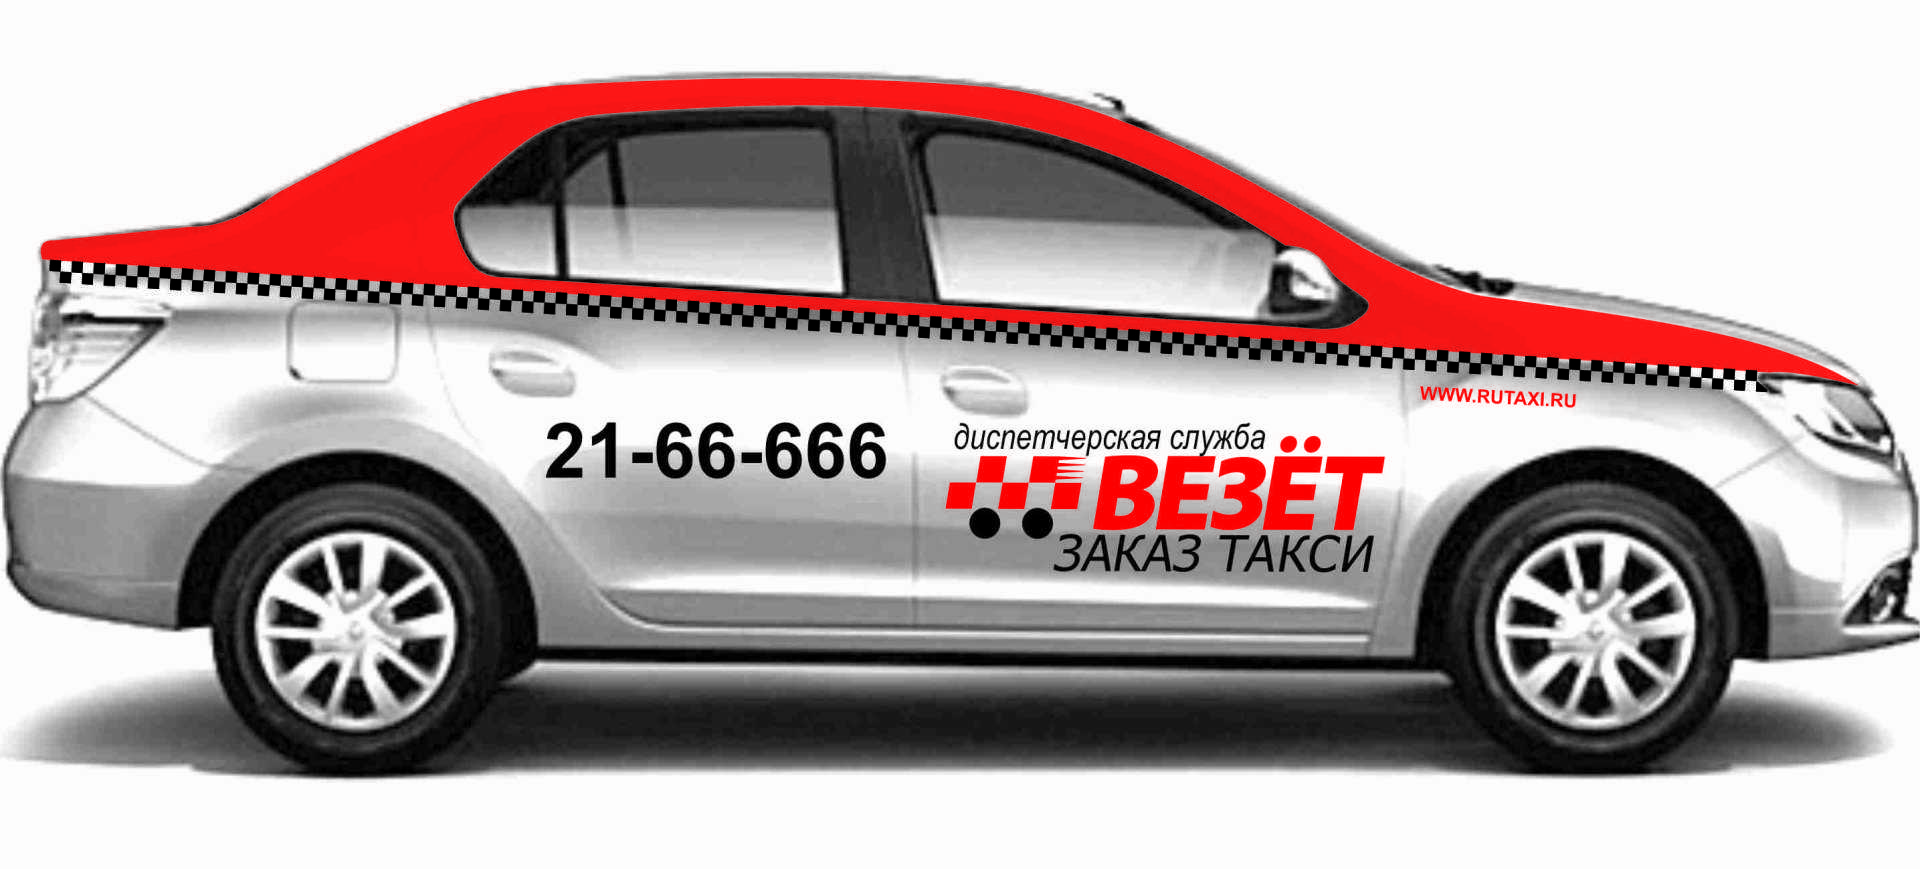 Такси везет Краснодар